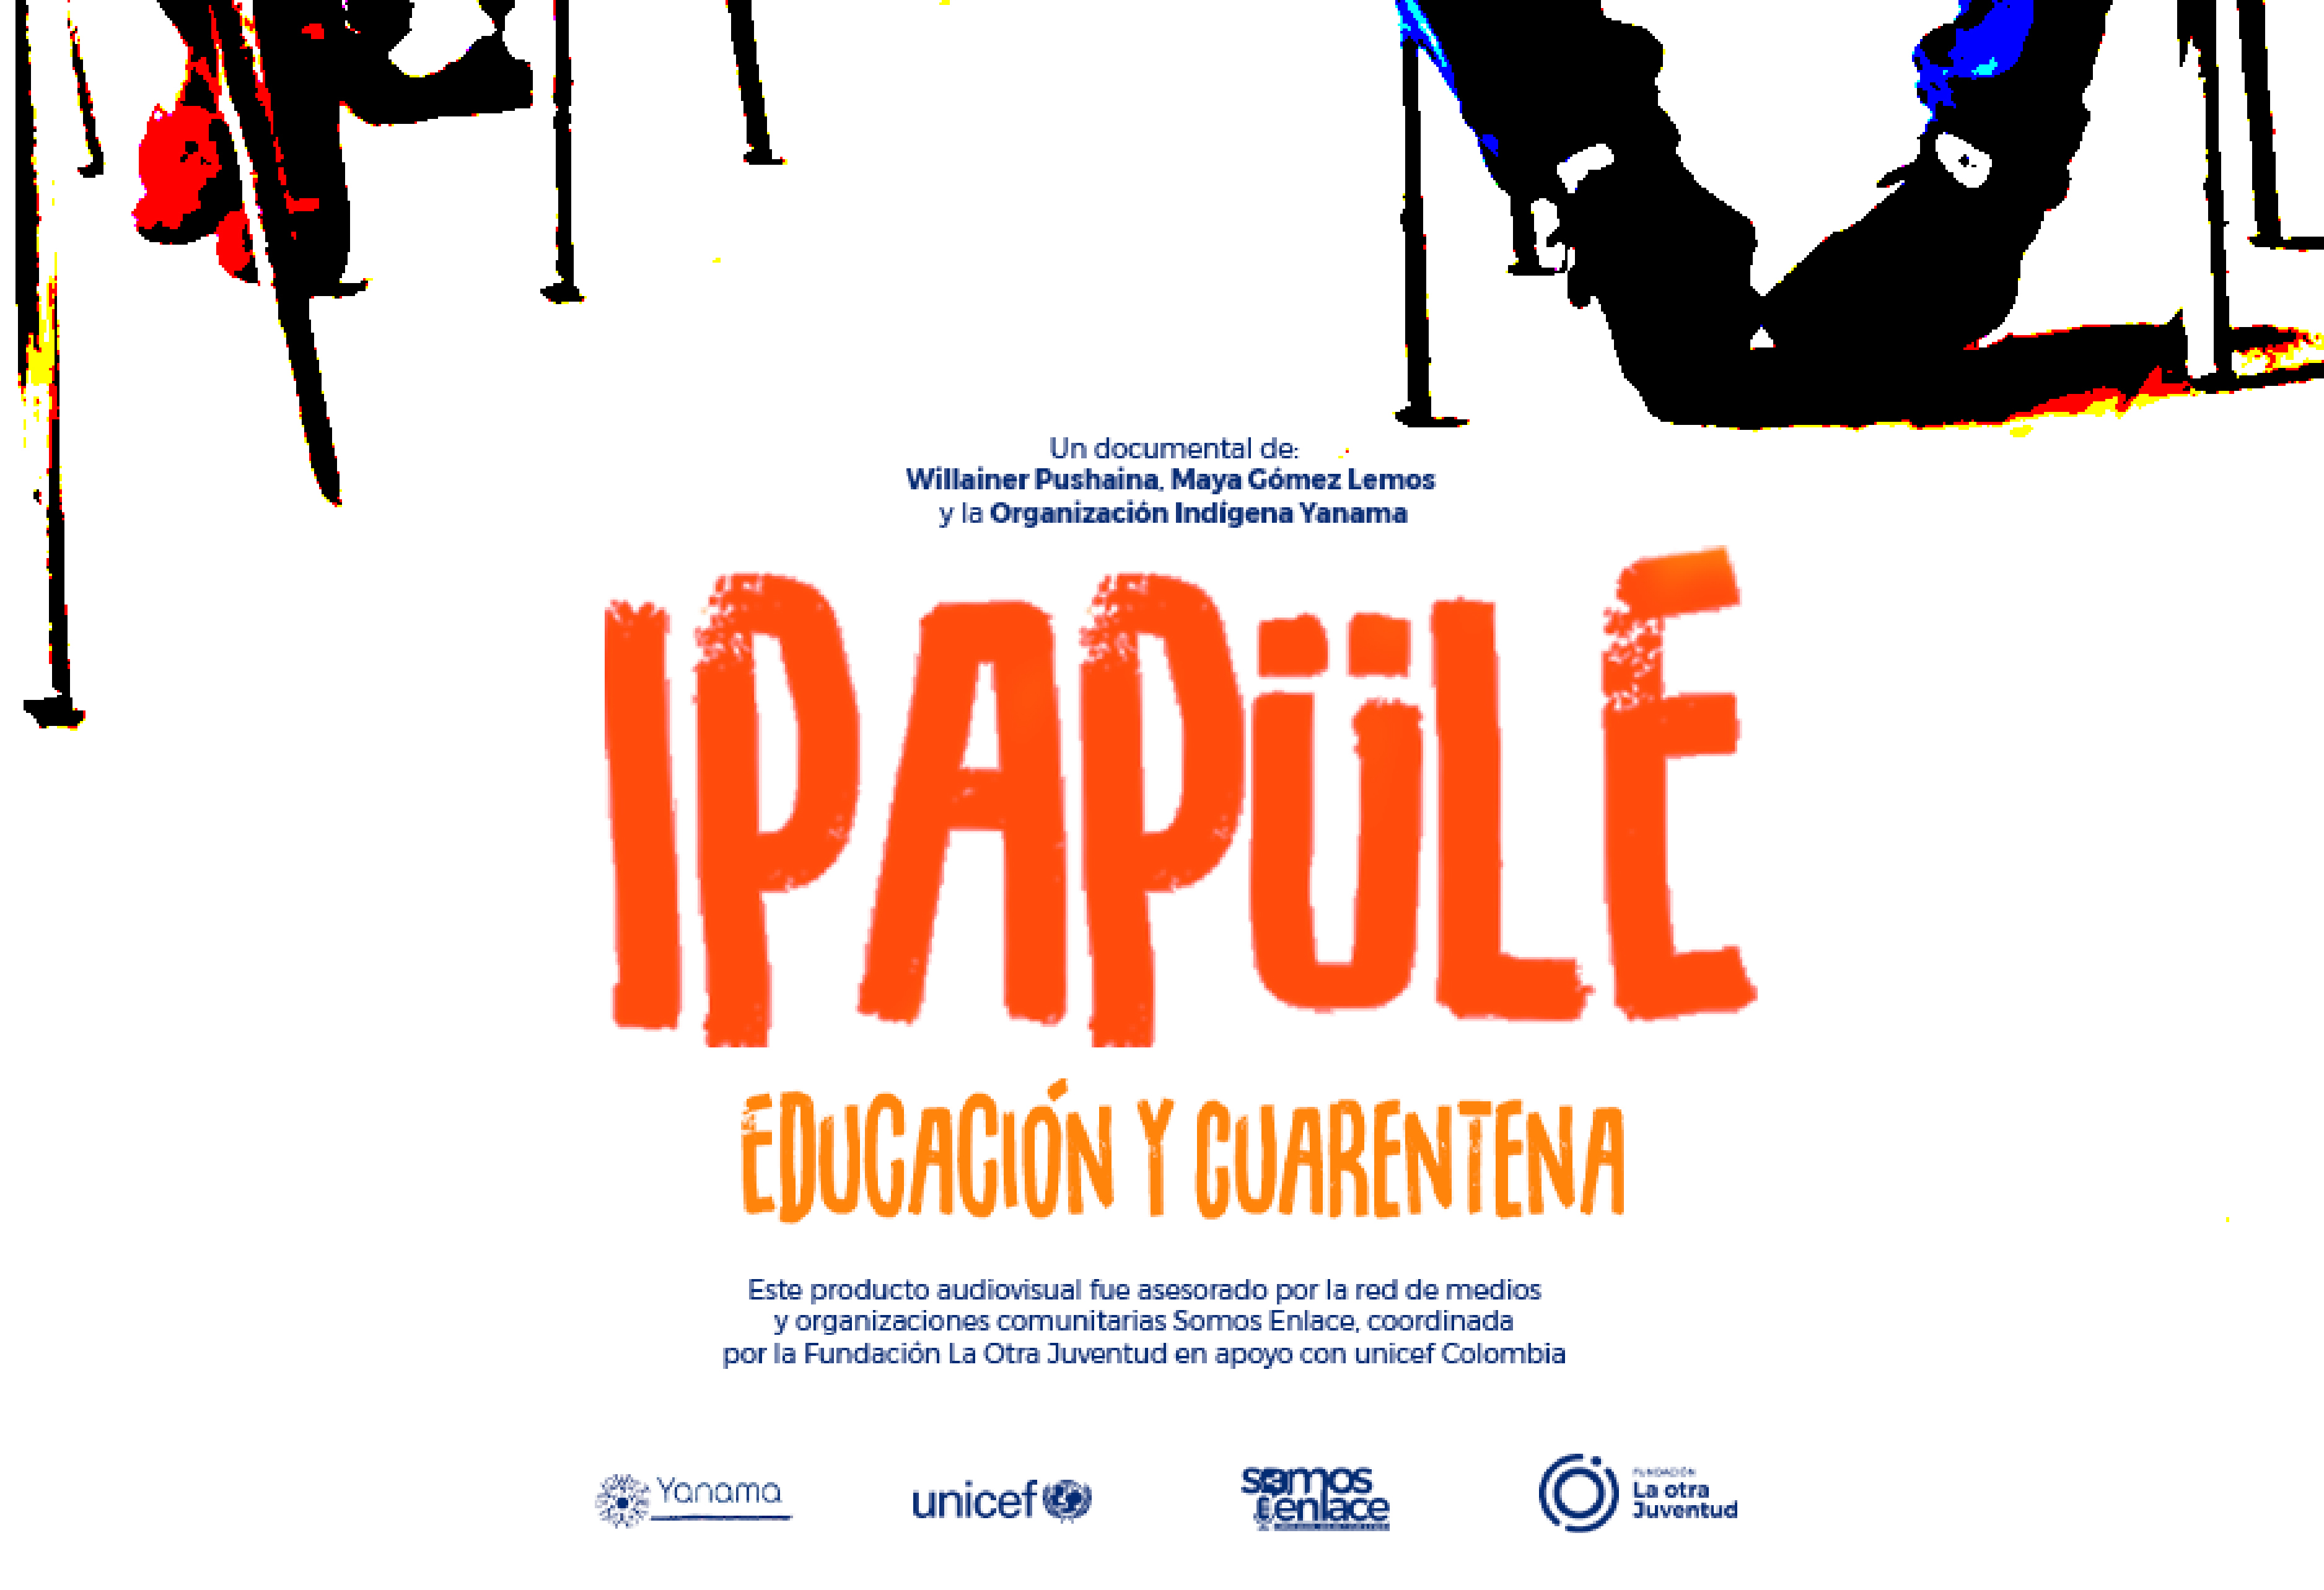 Ipapüle, Educación y Cuarentena Final – Video